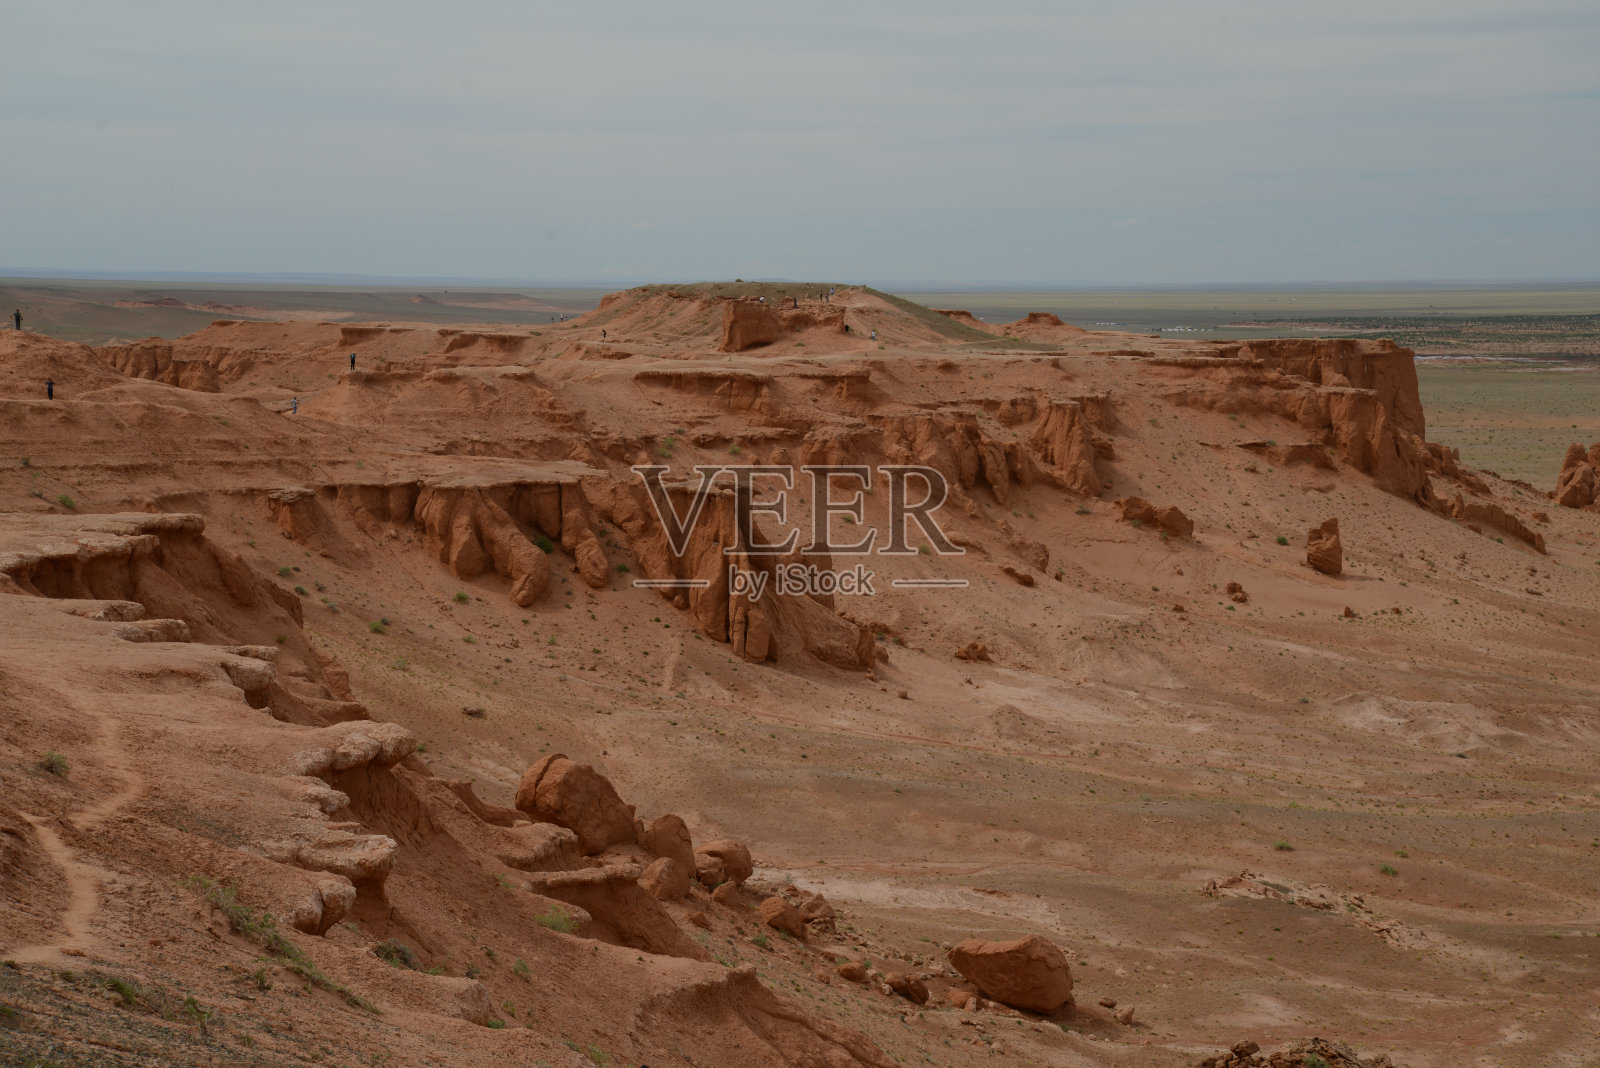 蒙古——有着蔚蓝天空的土地照片摄影图片